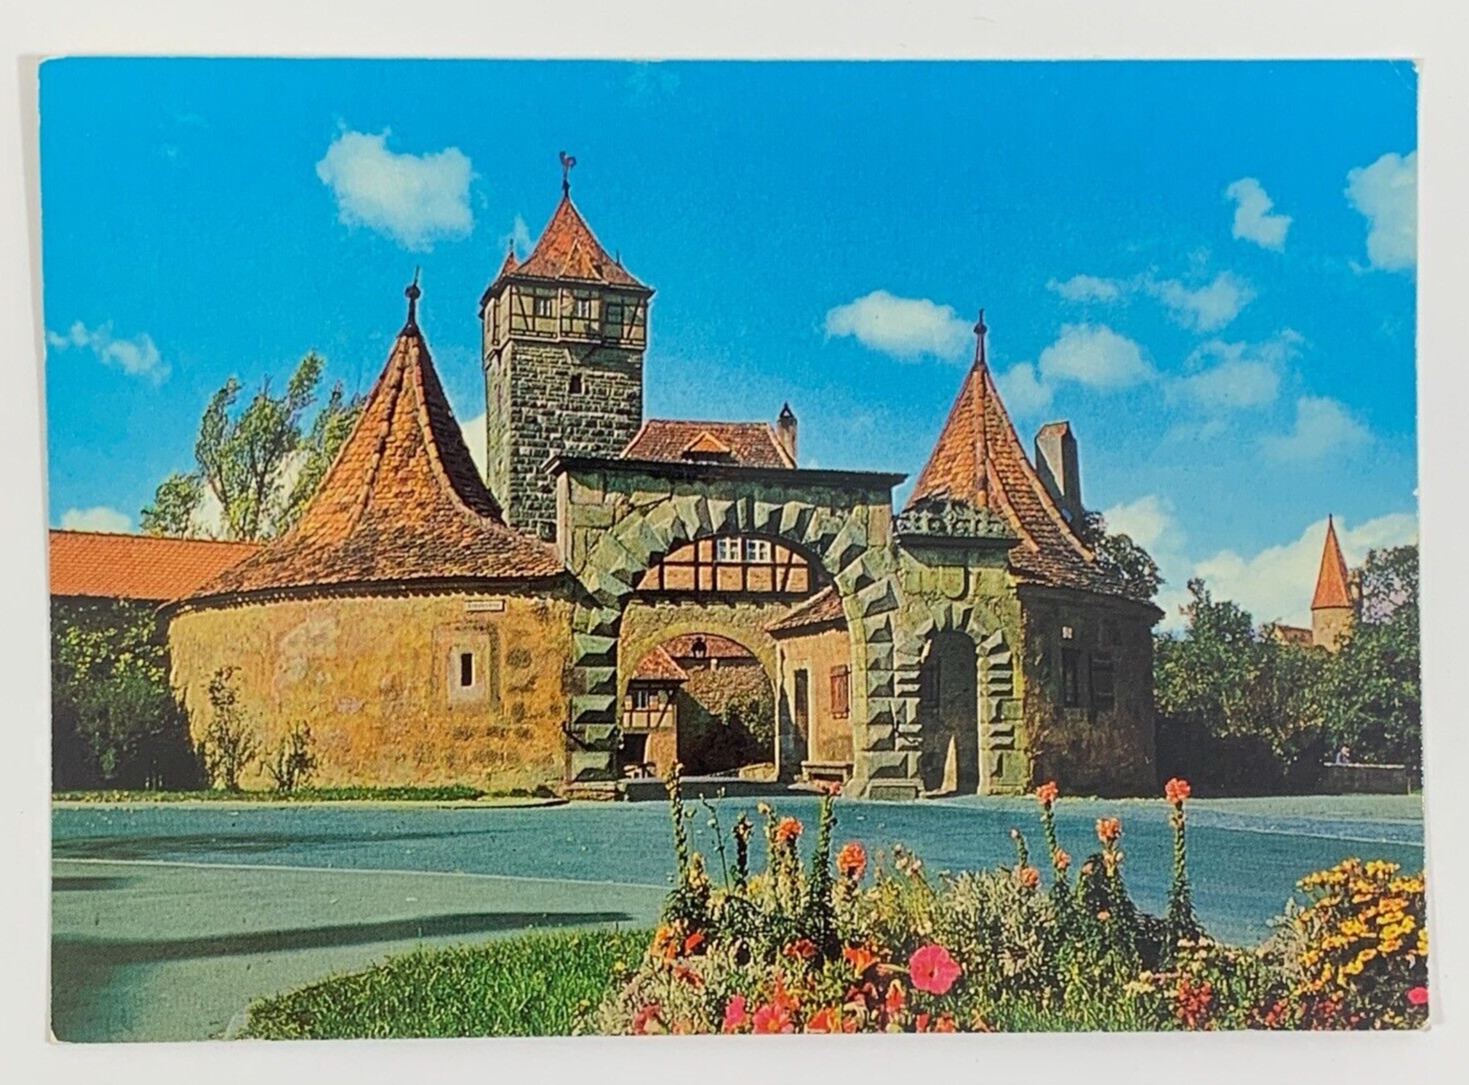 Rodertor Roeder Gate Rothenburg ob der Tauber Germany Postcard Unposted